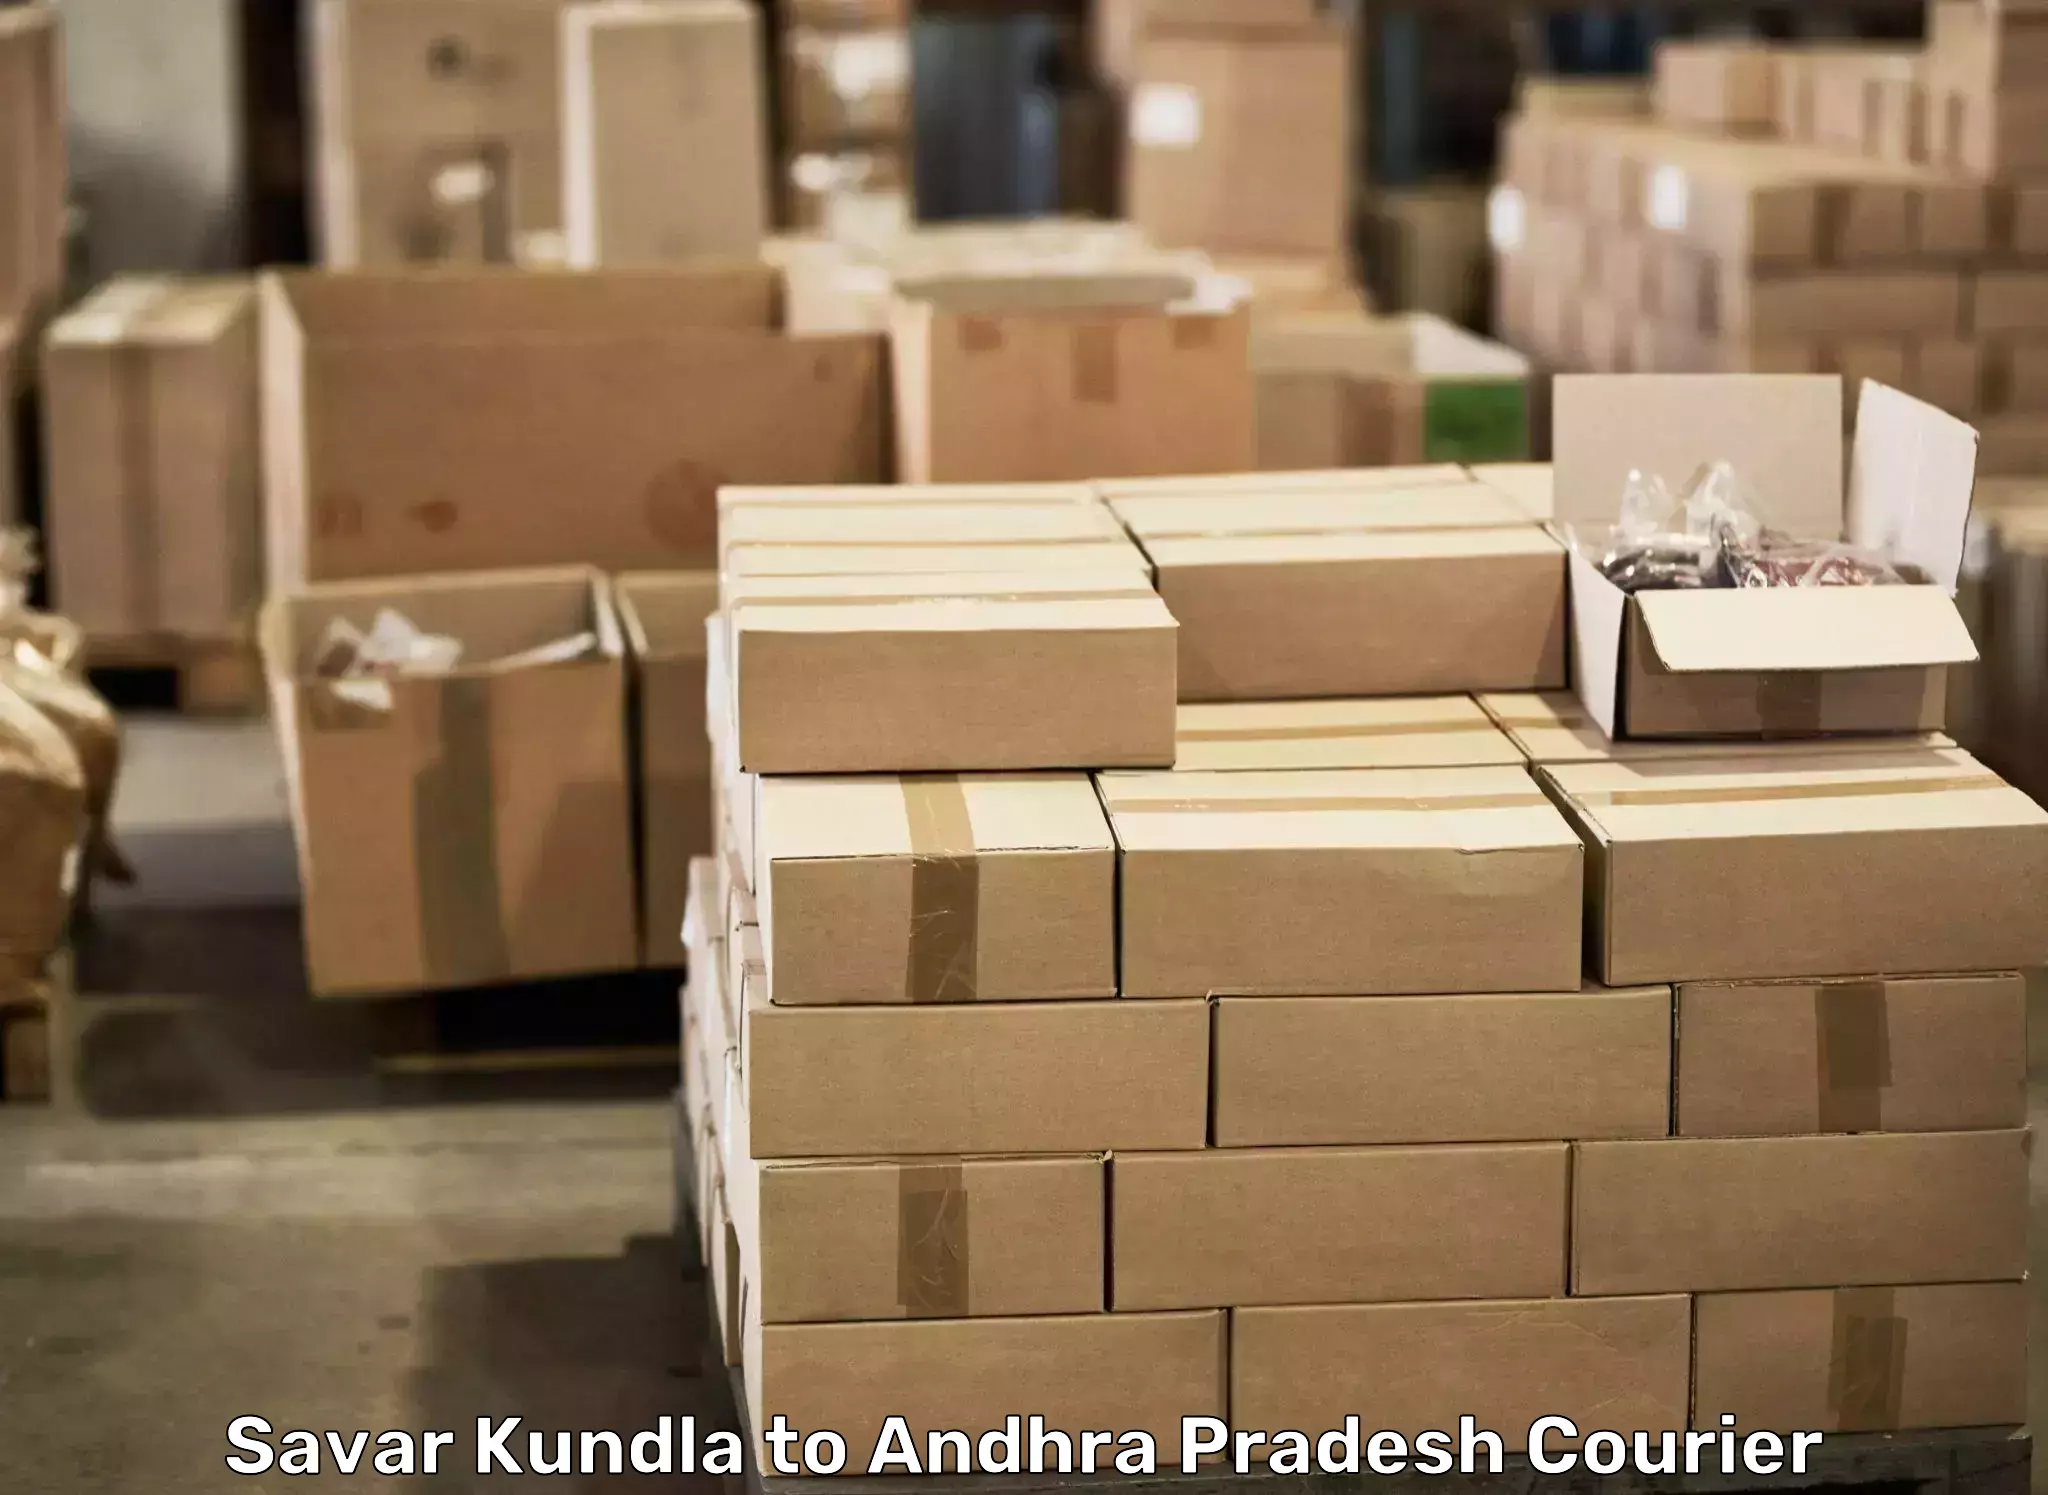 Efficient moving and packing Savar Kundla to Jammalamadugu